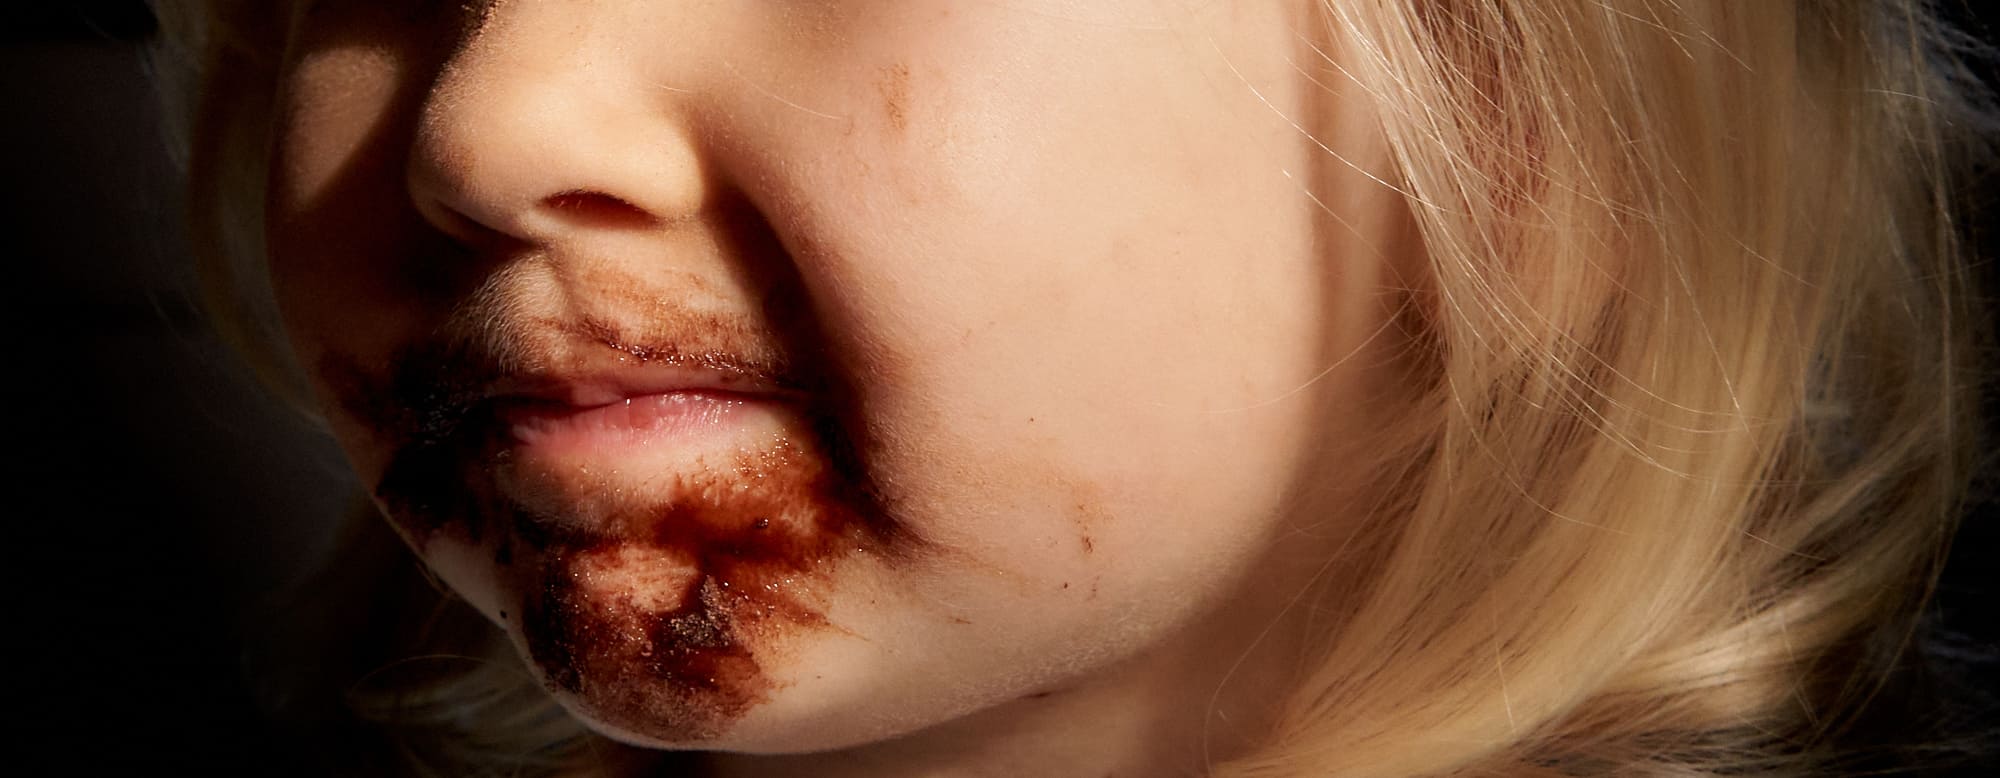 Familienfotografie mit Schokolade verschmierter Mund